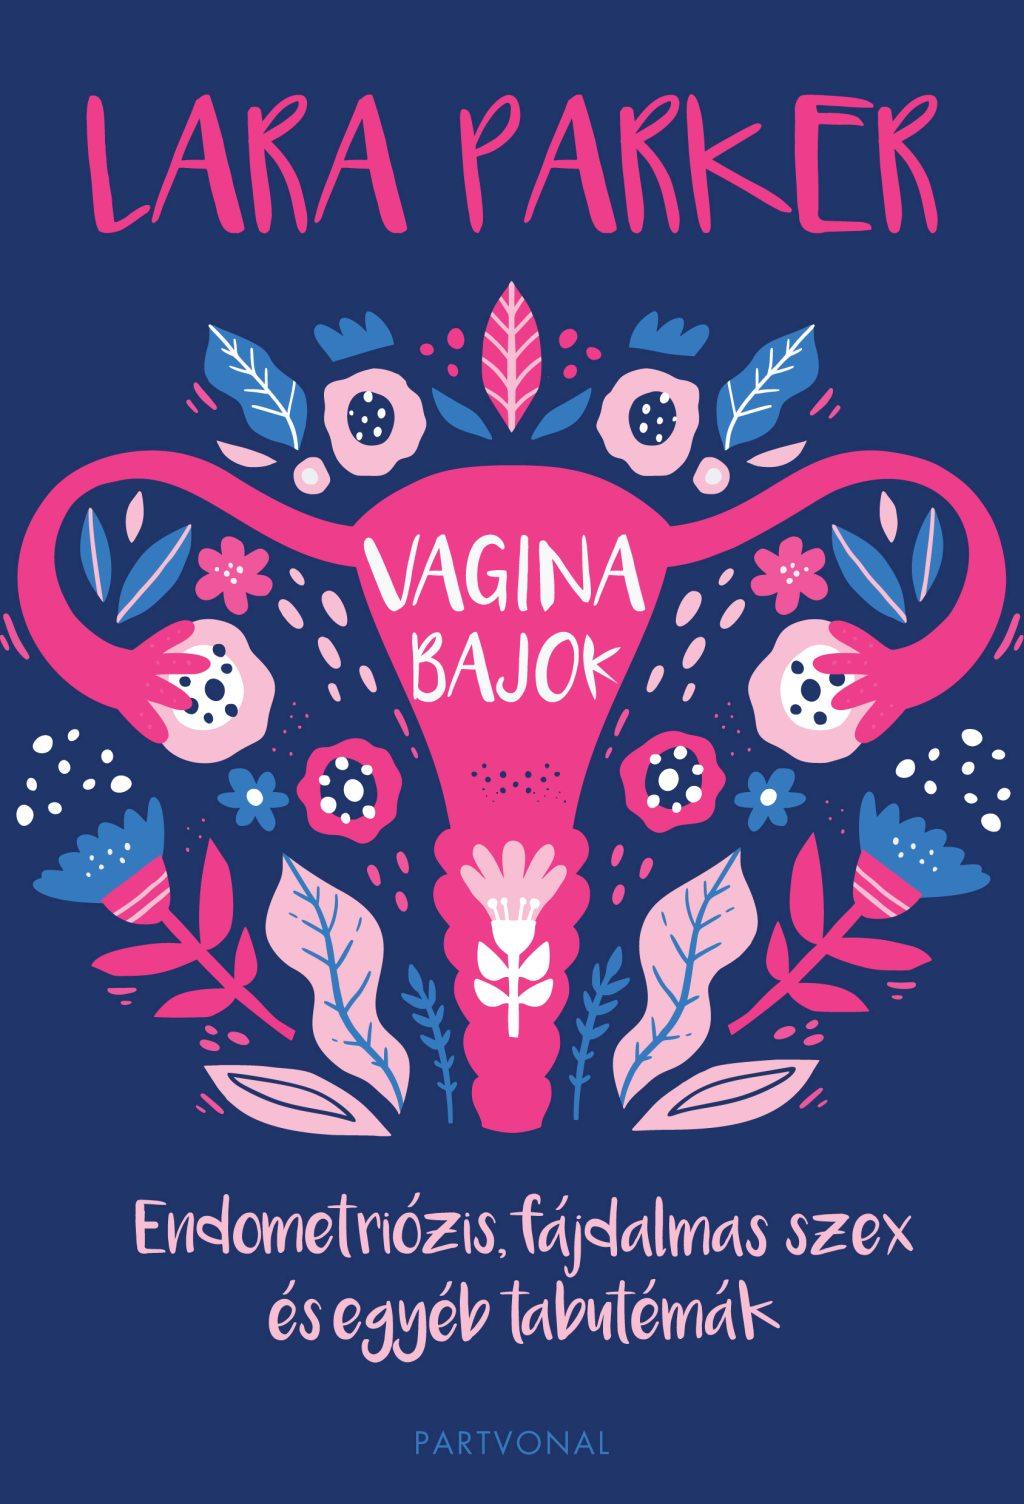 Lara Parker - Vaginabajok - Endometriózis, fájdalmas szex és egyéb tabutémák